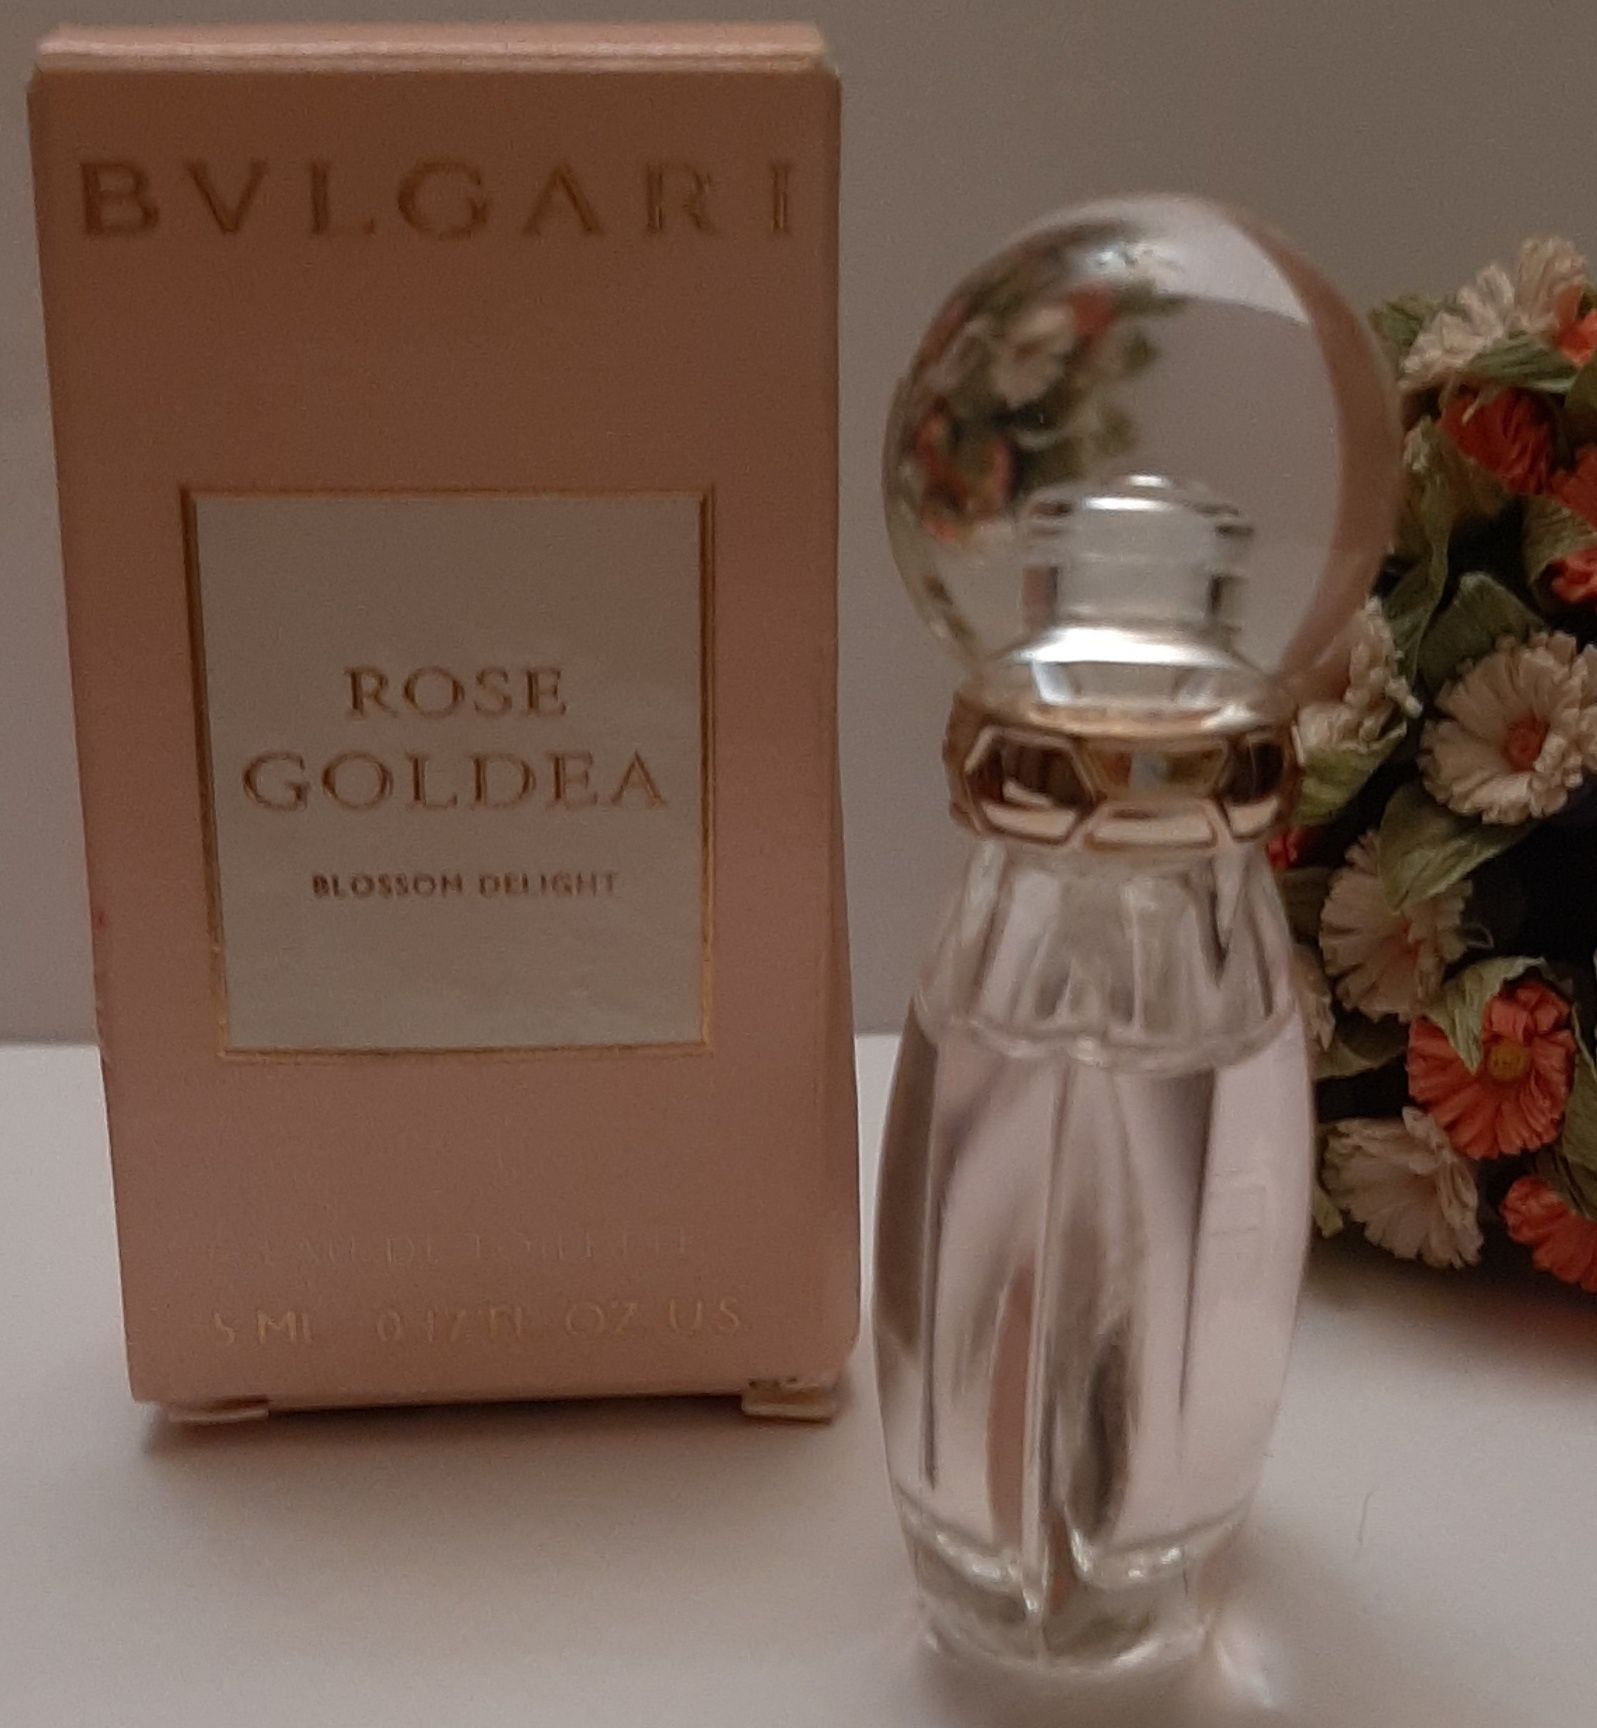 Bvlgari Rose Goldea Blossom Delight edt 5 ml, miniatura